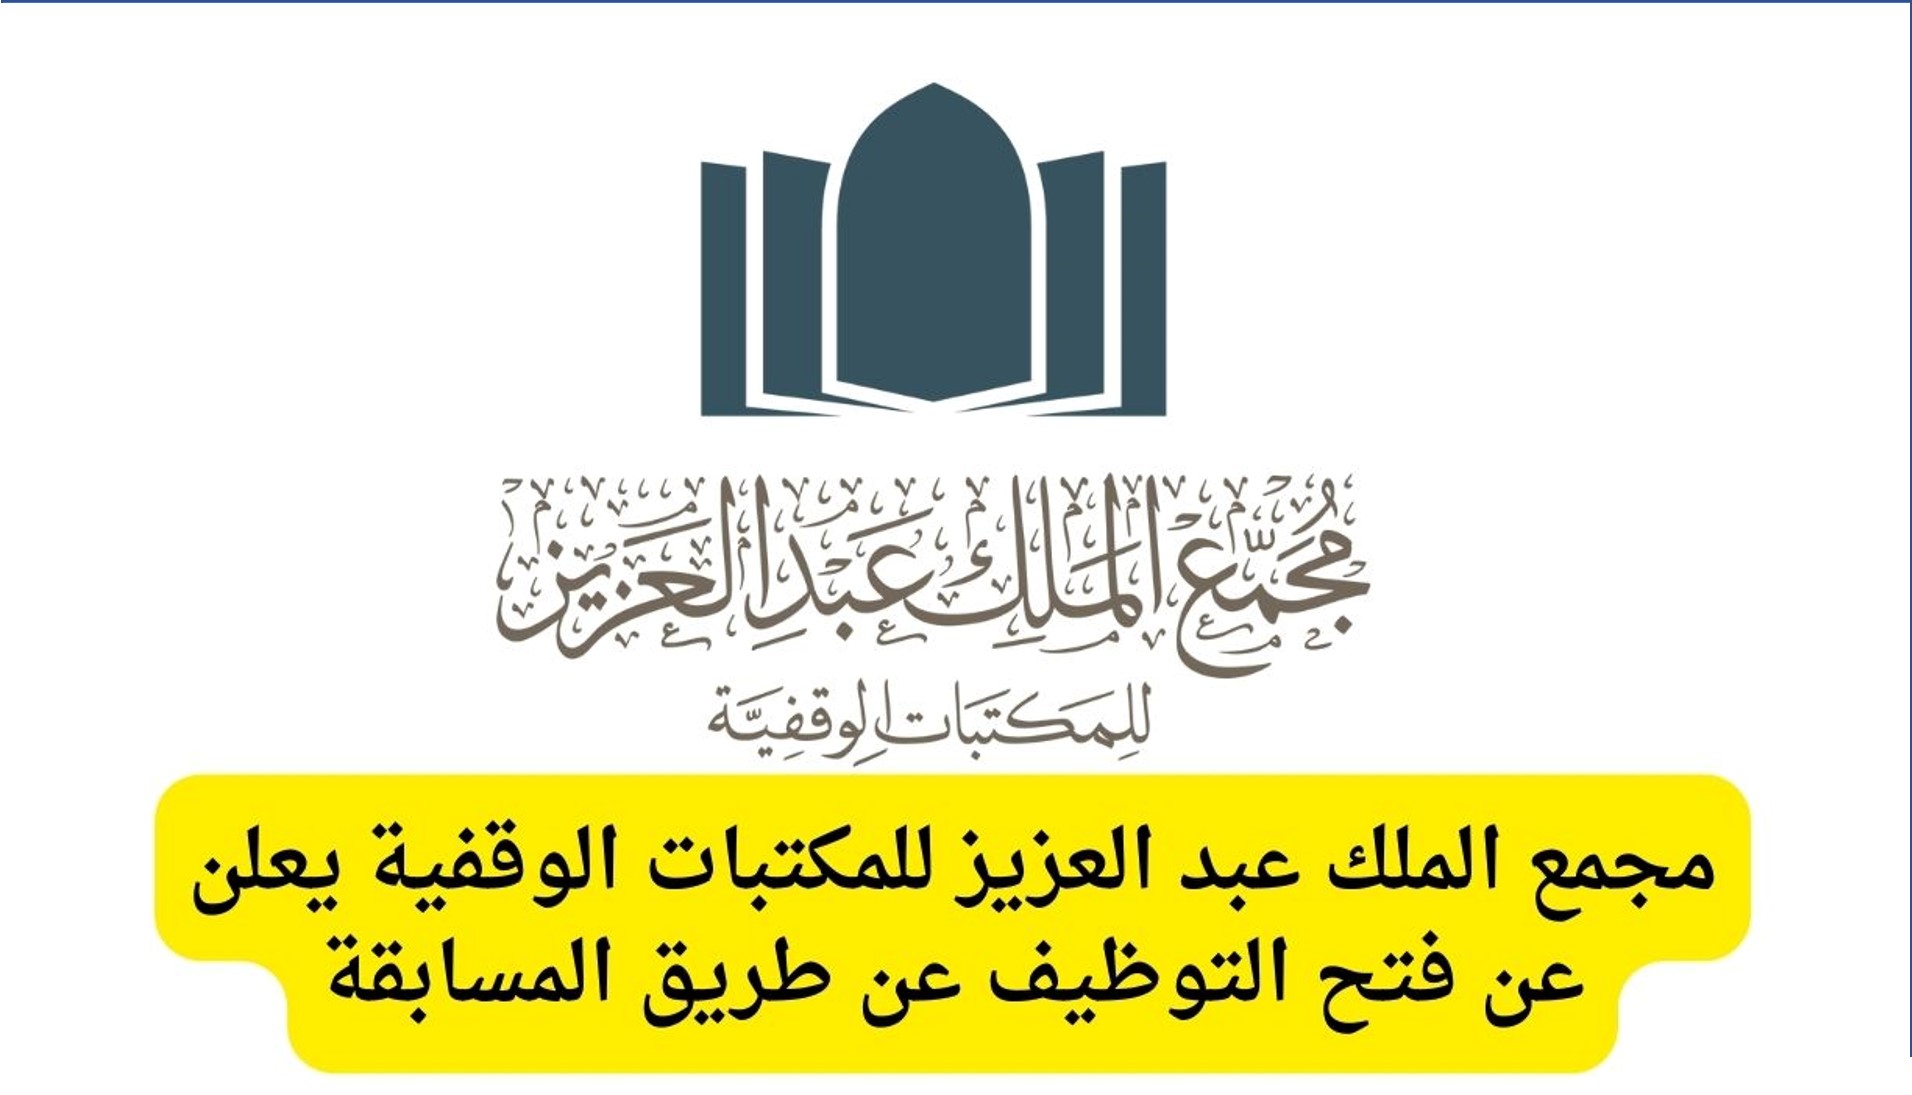 مجمع الملك عبدالعزيز للمكتبات الوقفية يعلن عن وظائف